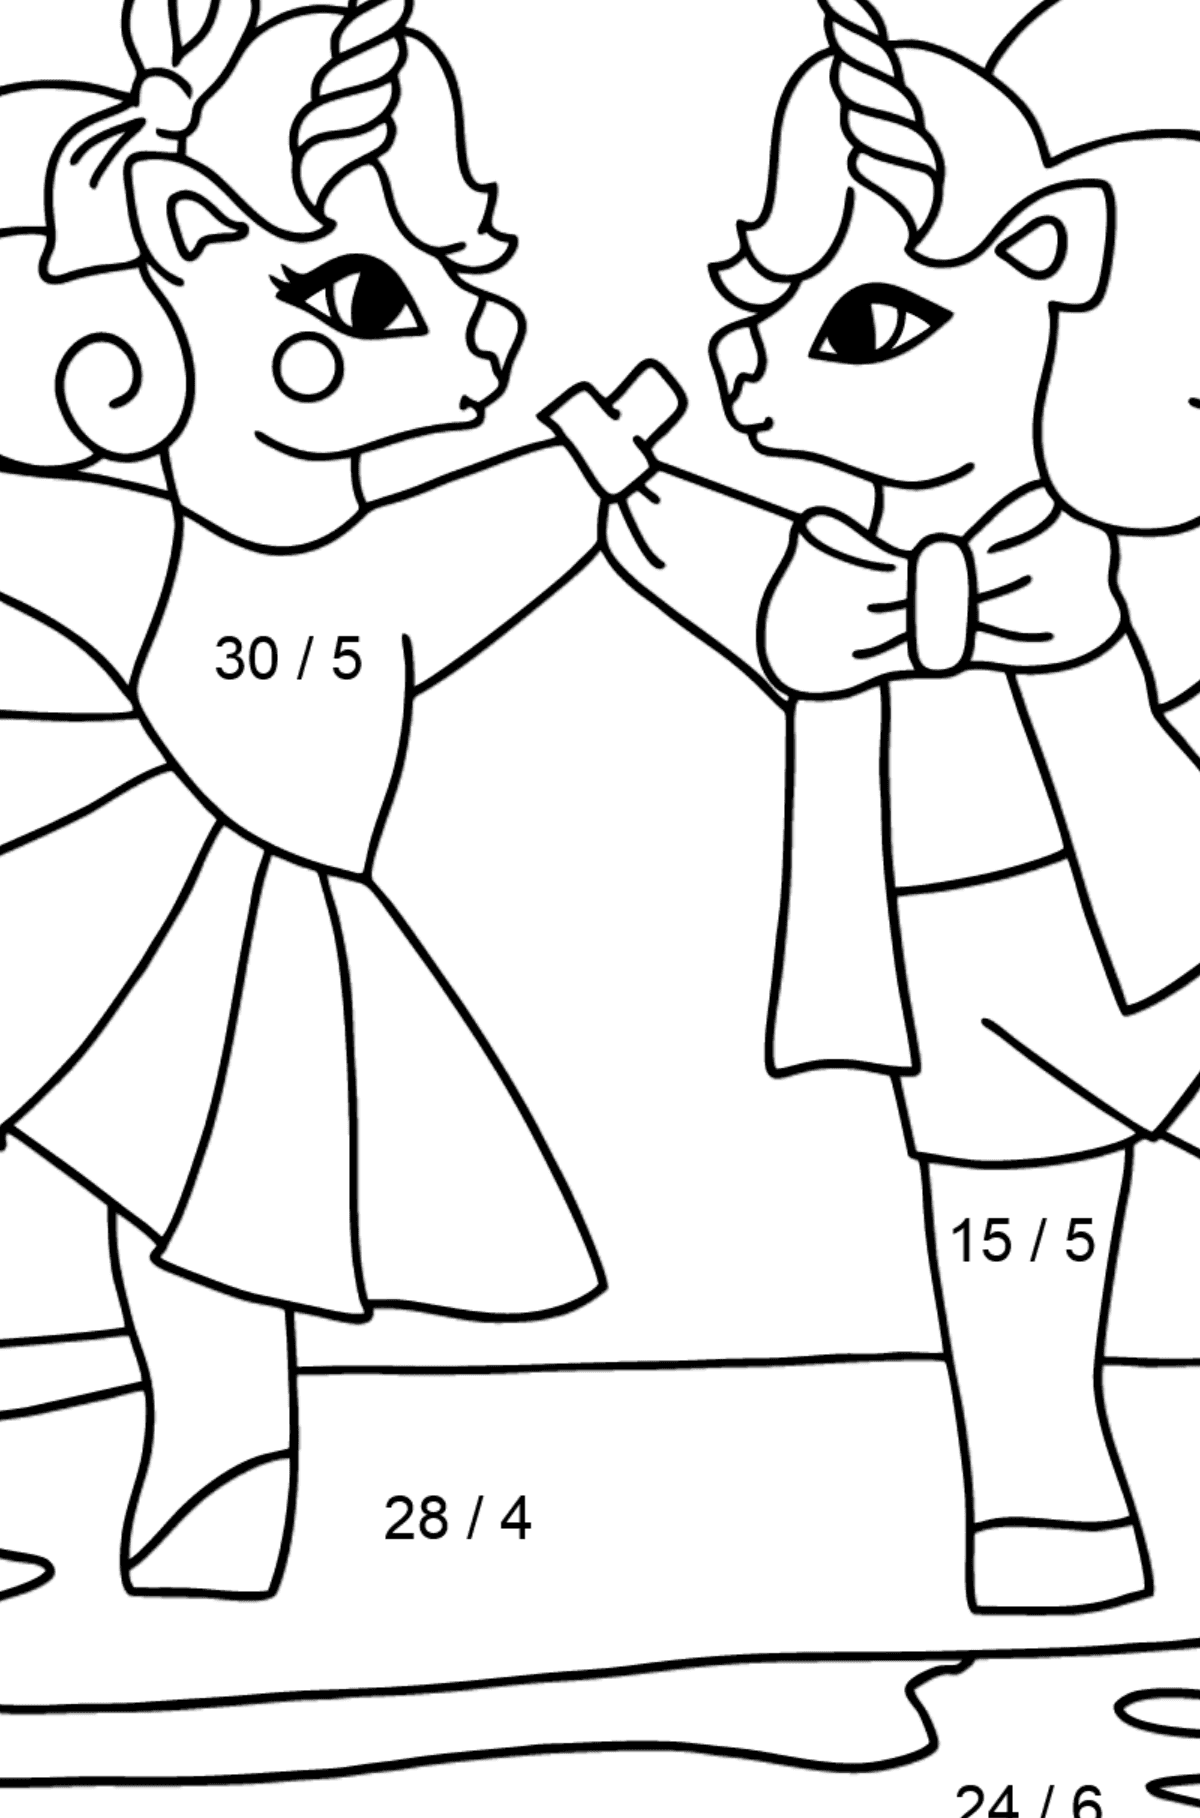 Värityskuva söpöt yksisarviset (helppo) - Matemaattinen Värityslasku - Jakolasku lapsille